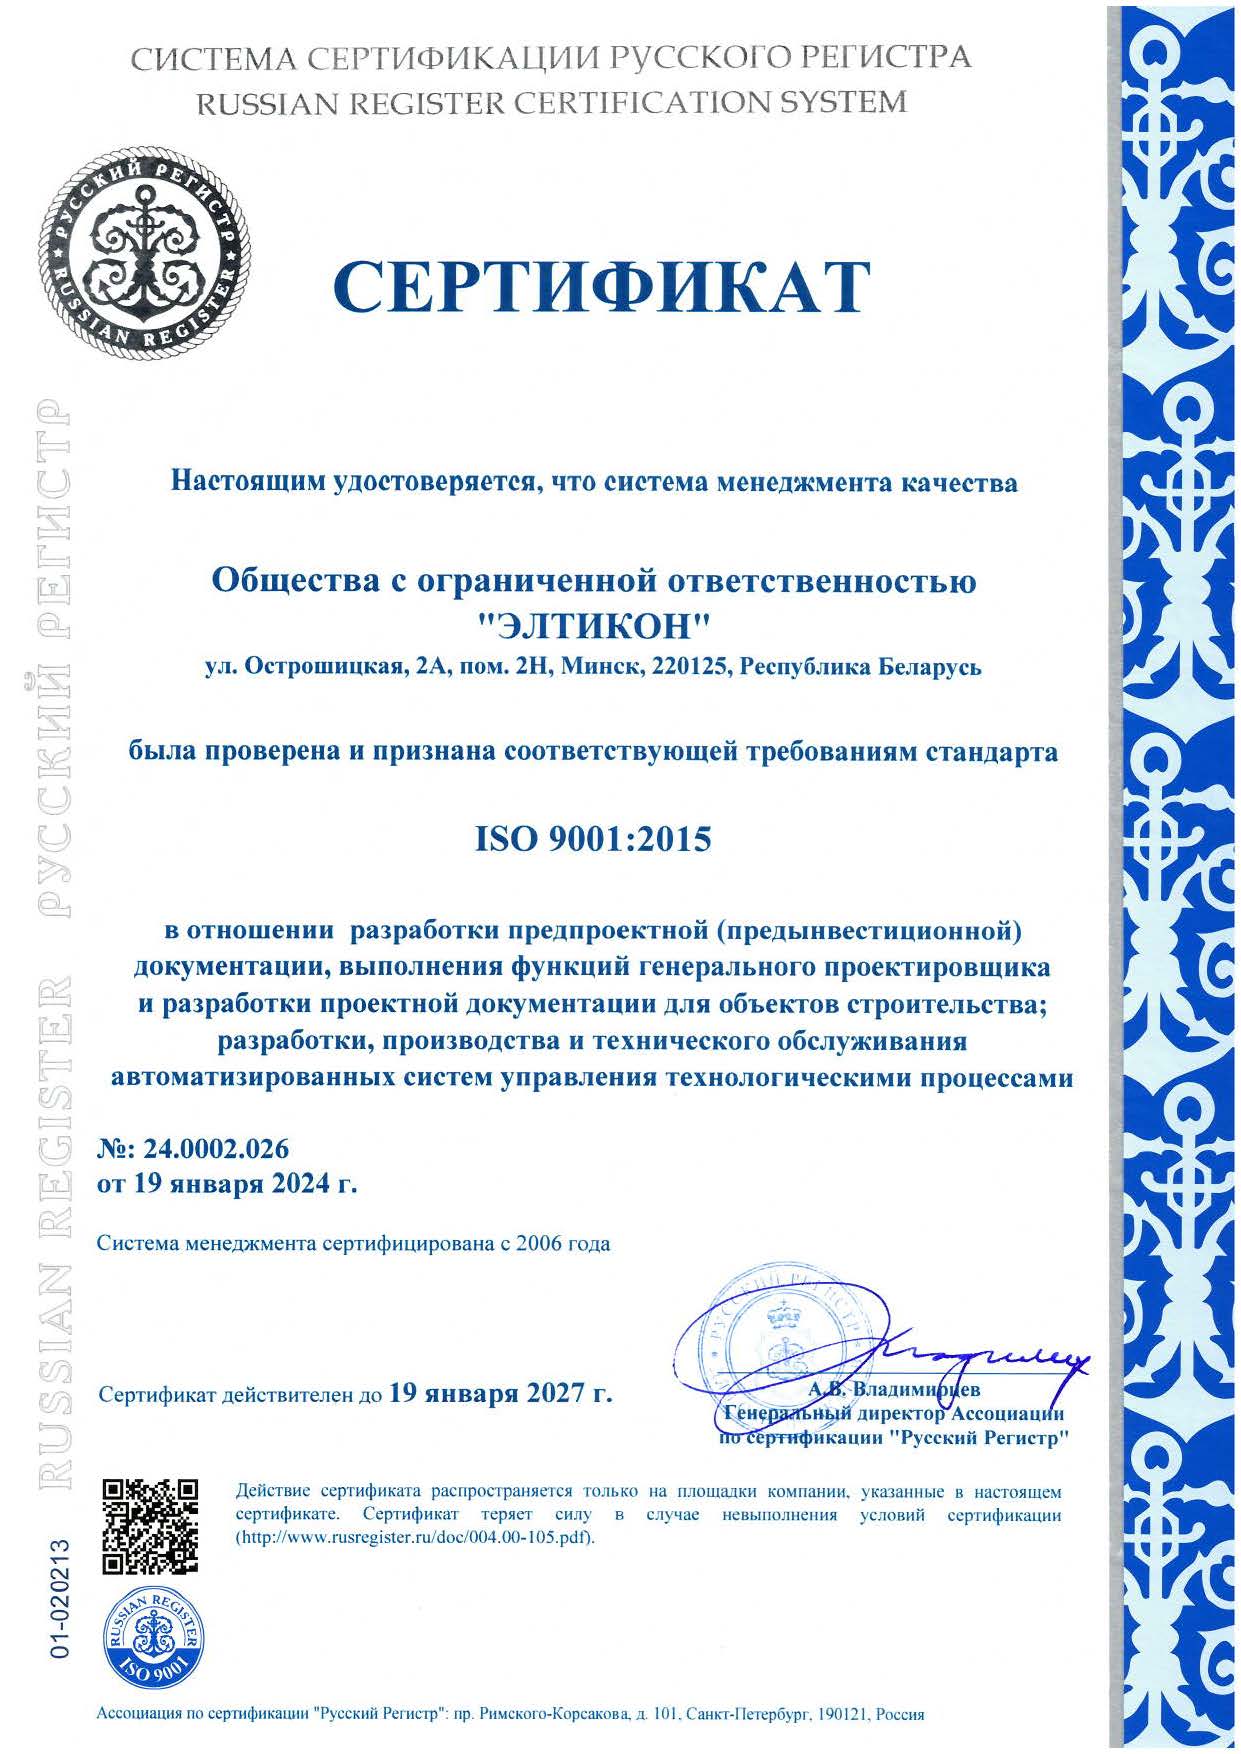 Международный сертификат соответствия системы менеджмента Элтикон на соответствие требованиям стандарта ISO 9001: 2008 (STB ISO 9001-2009), выданный IQNet